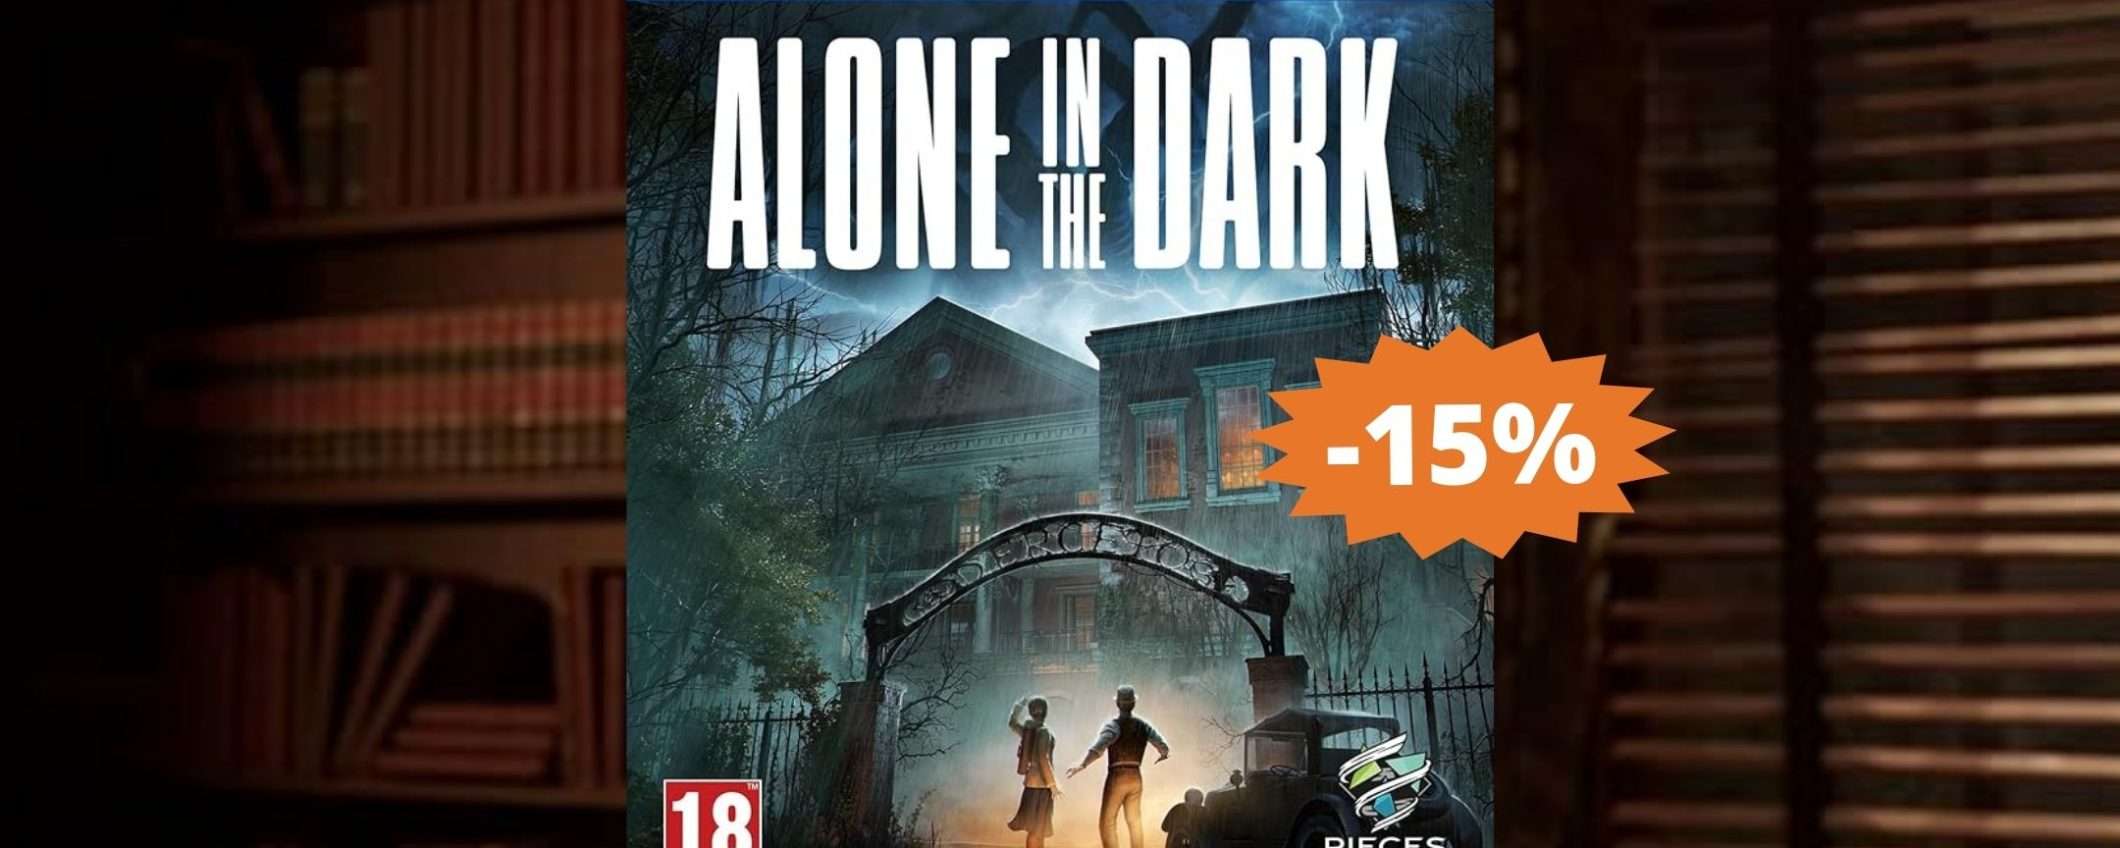 Alone in the Dark per PS5: sconto ESCLUSIVO del 15%